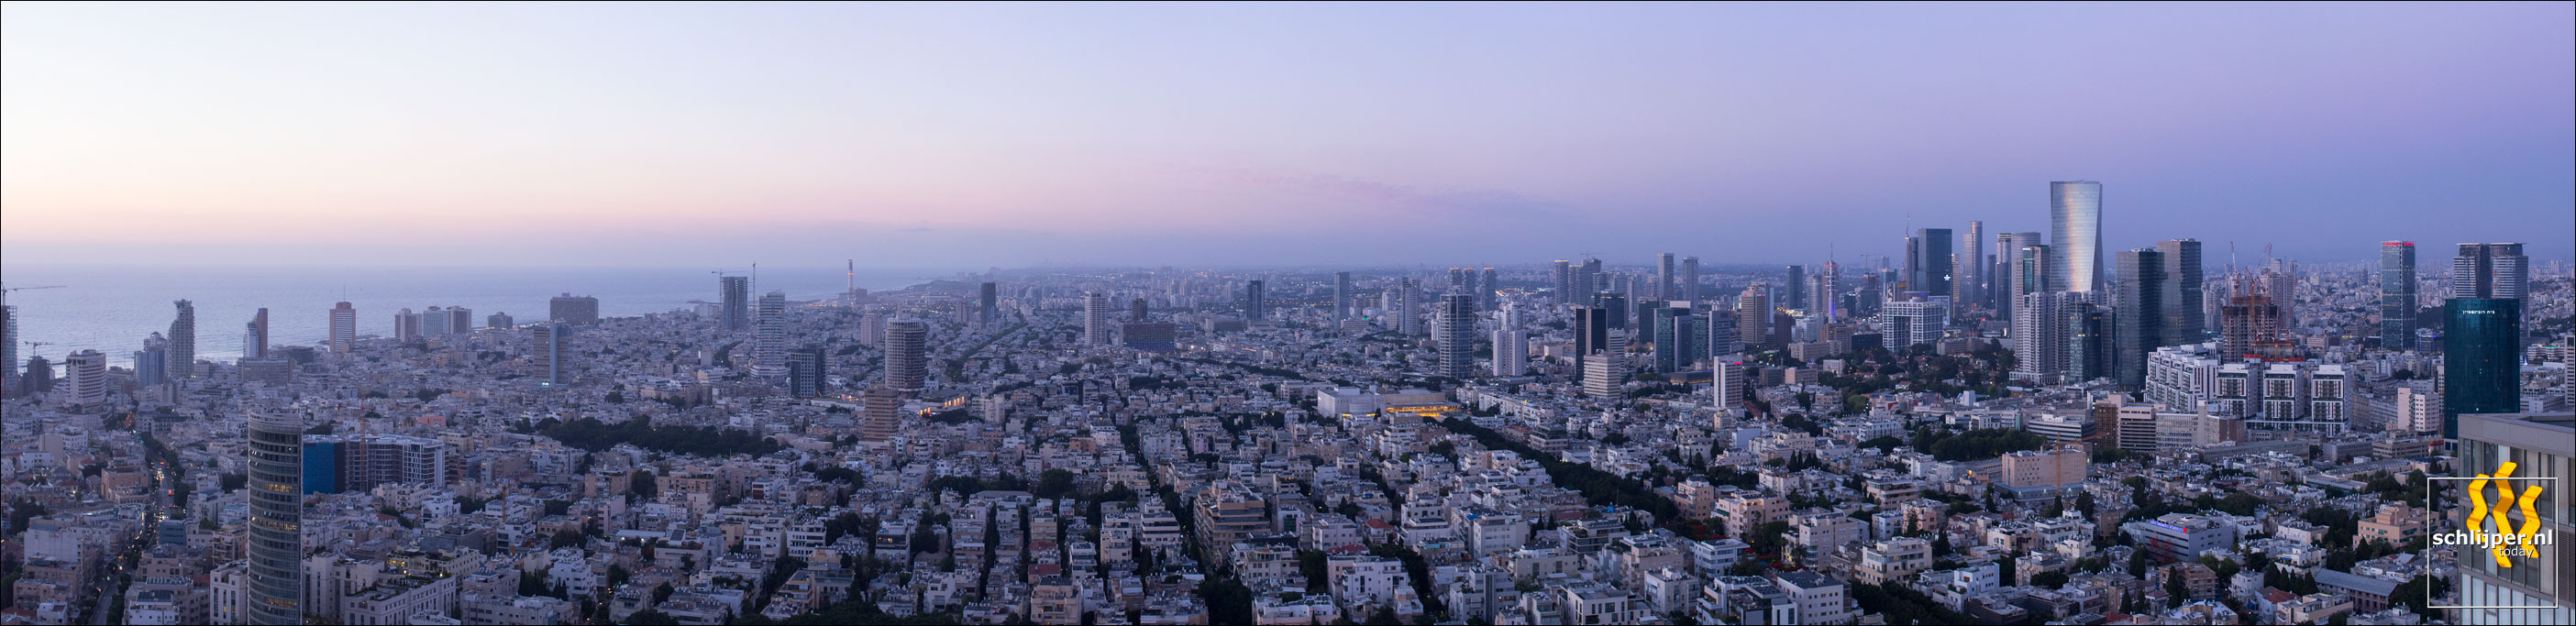 Israel, Tel Aviv, 9 juni 2017